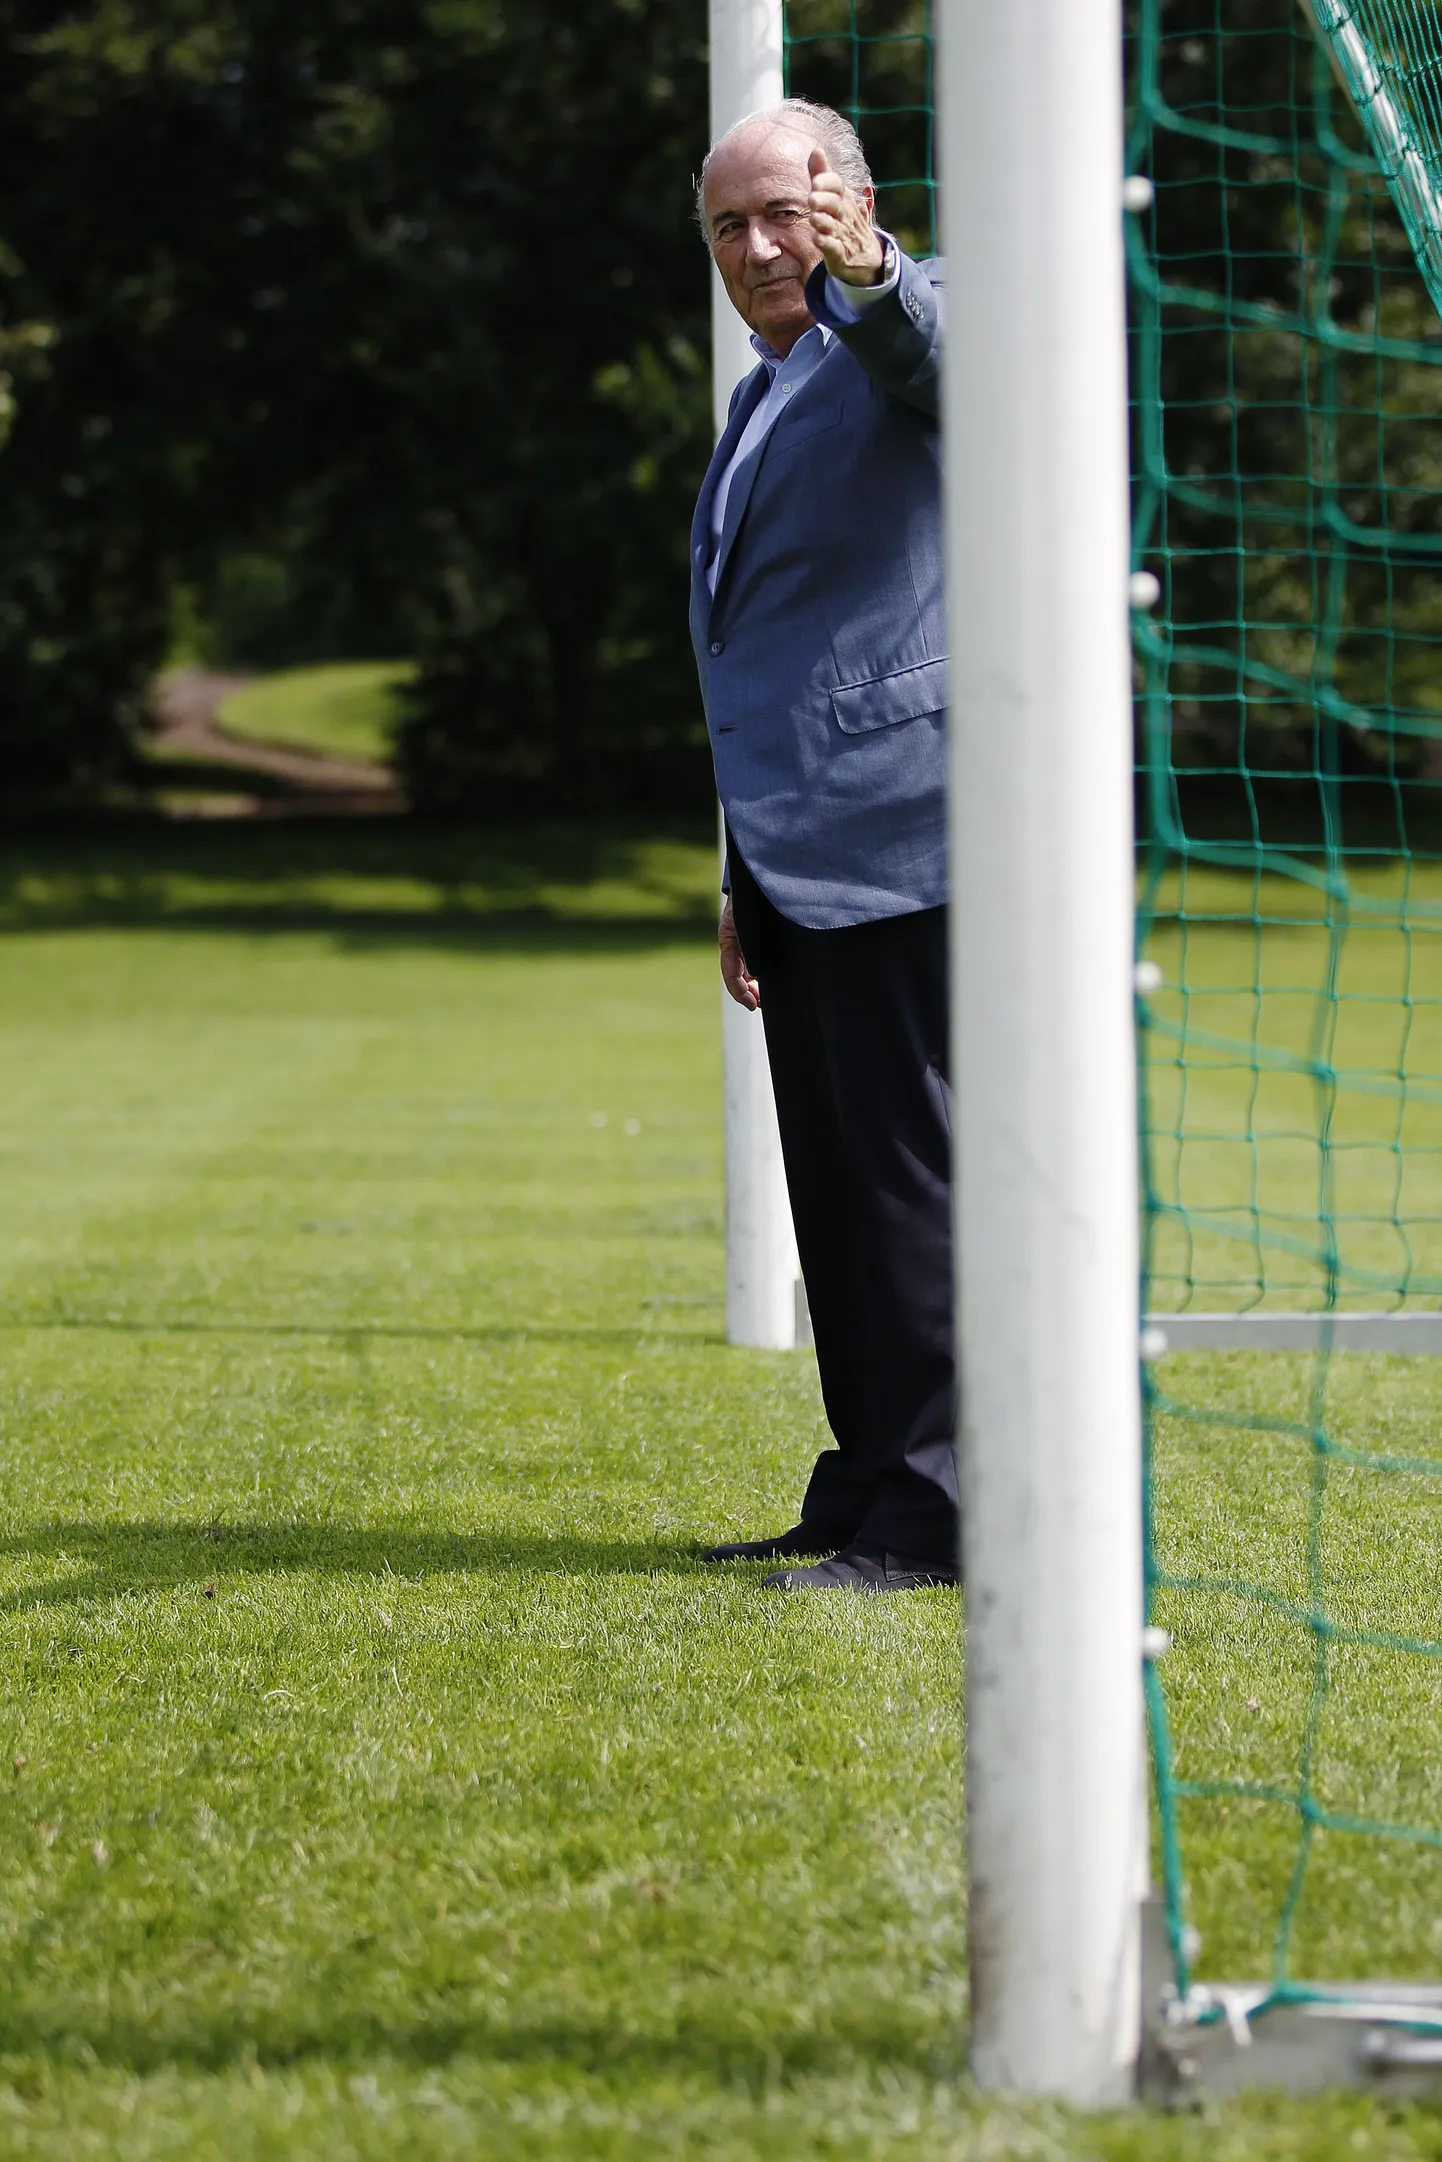 FIFA president Sepp Blatter väravajoonel seismas. Jalgpallis hakatakse õige pea kasutama väravajoonetehnoloogiat.